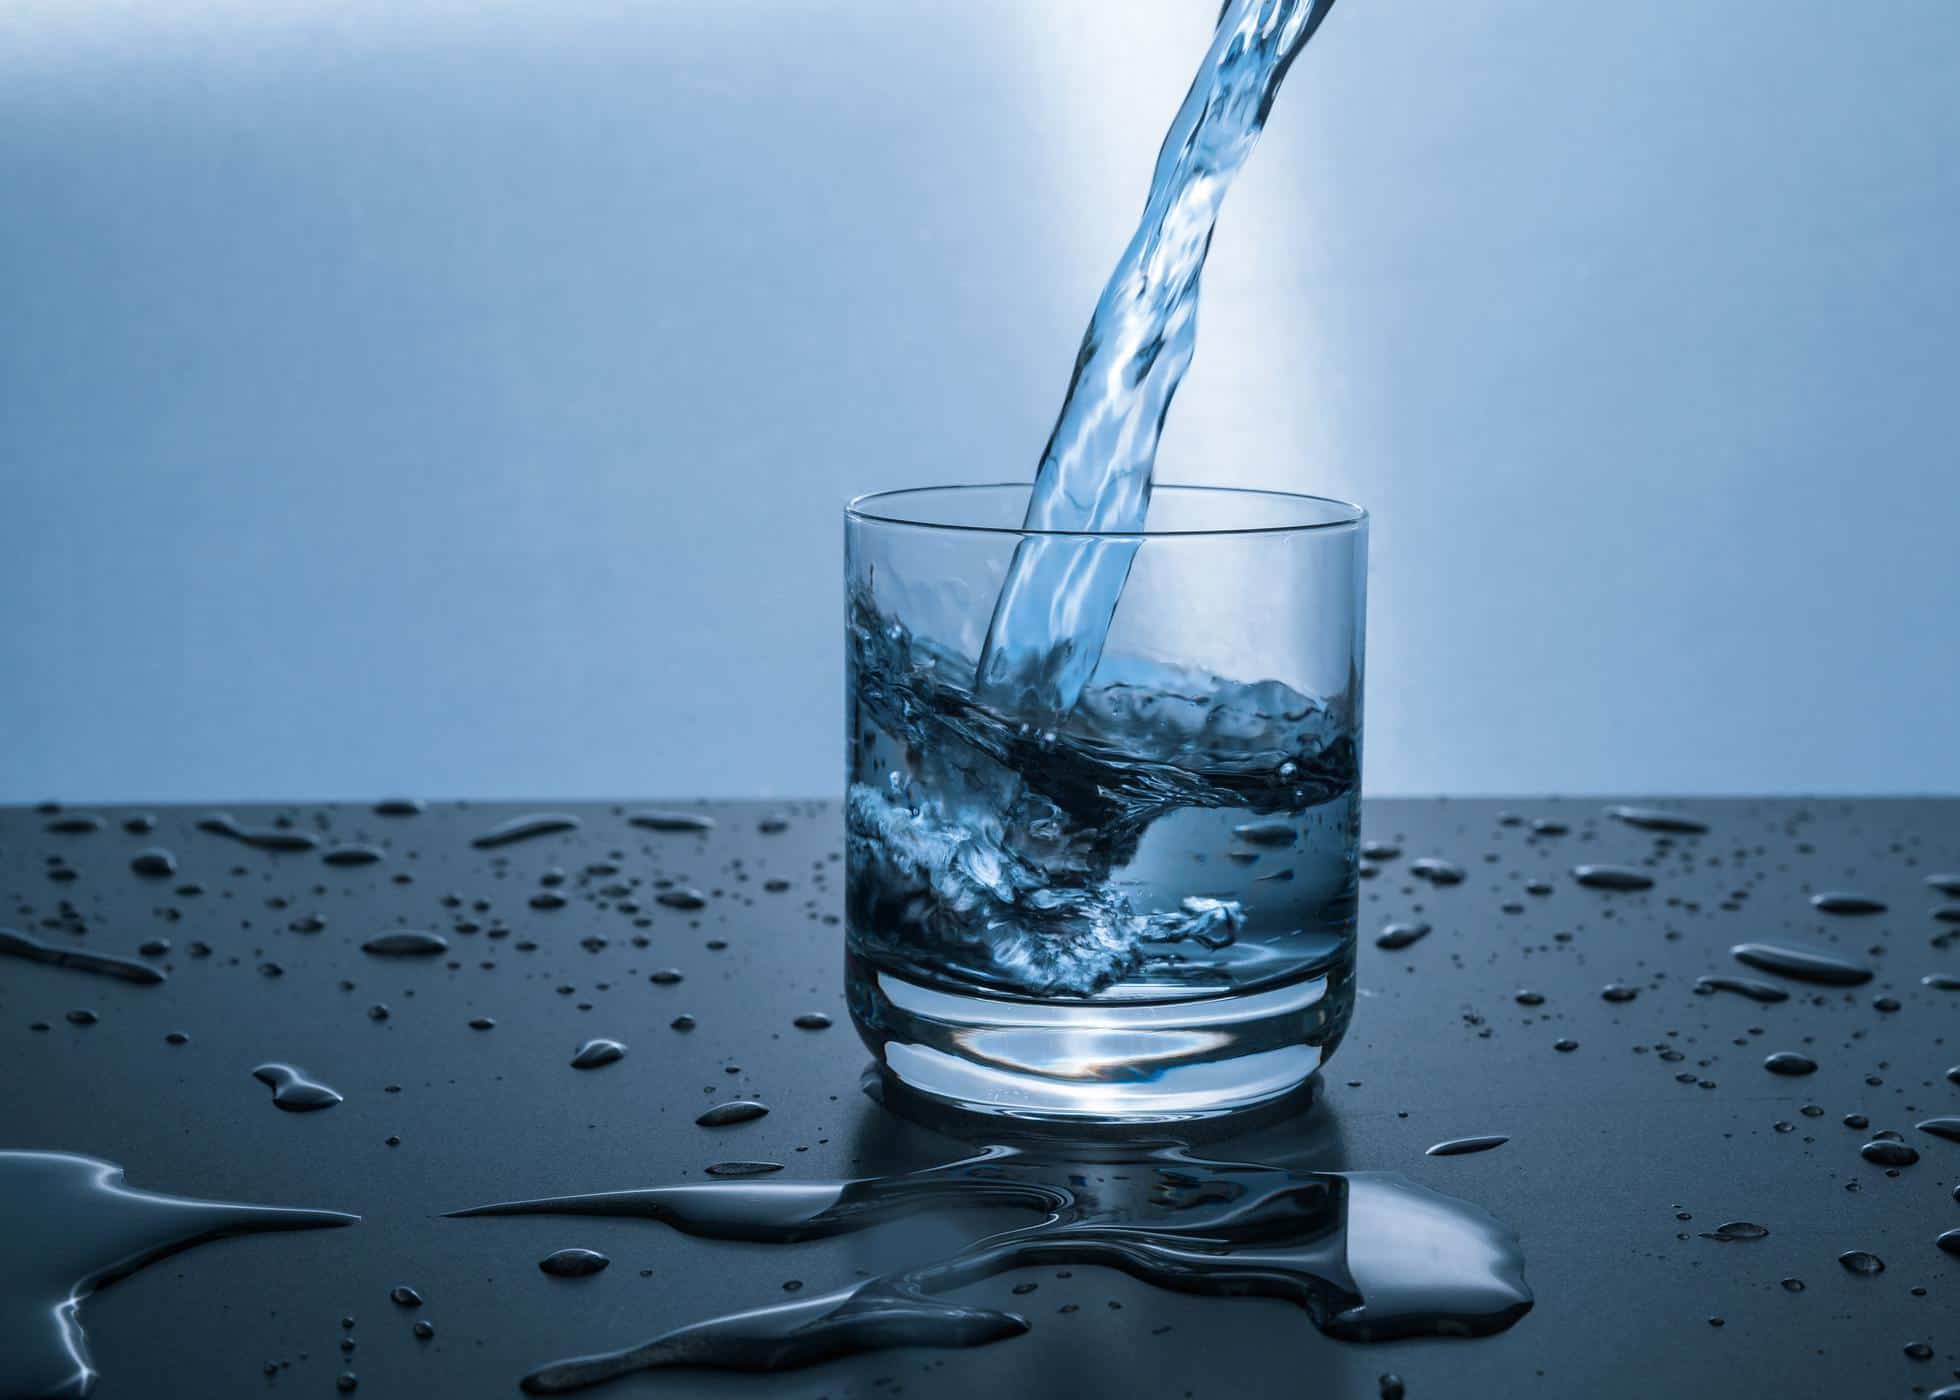 Memahami Standar dan Regulasi Depot Air Minum Isi Ulang (DAMIU)